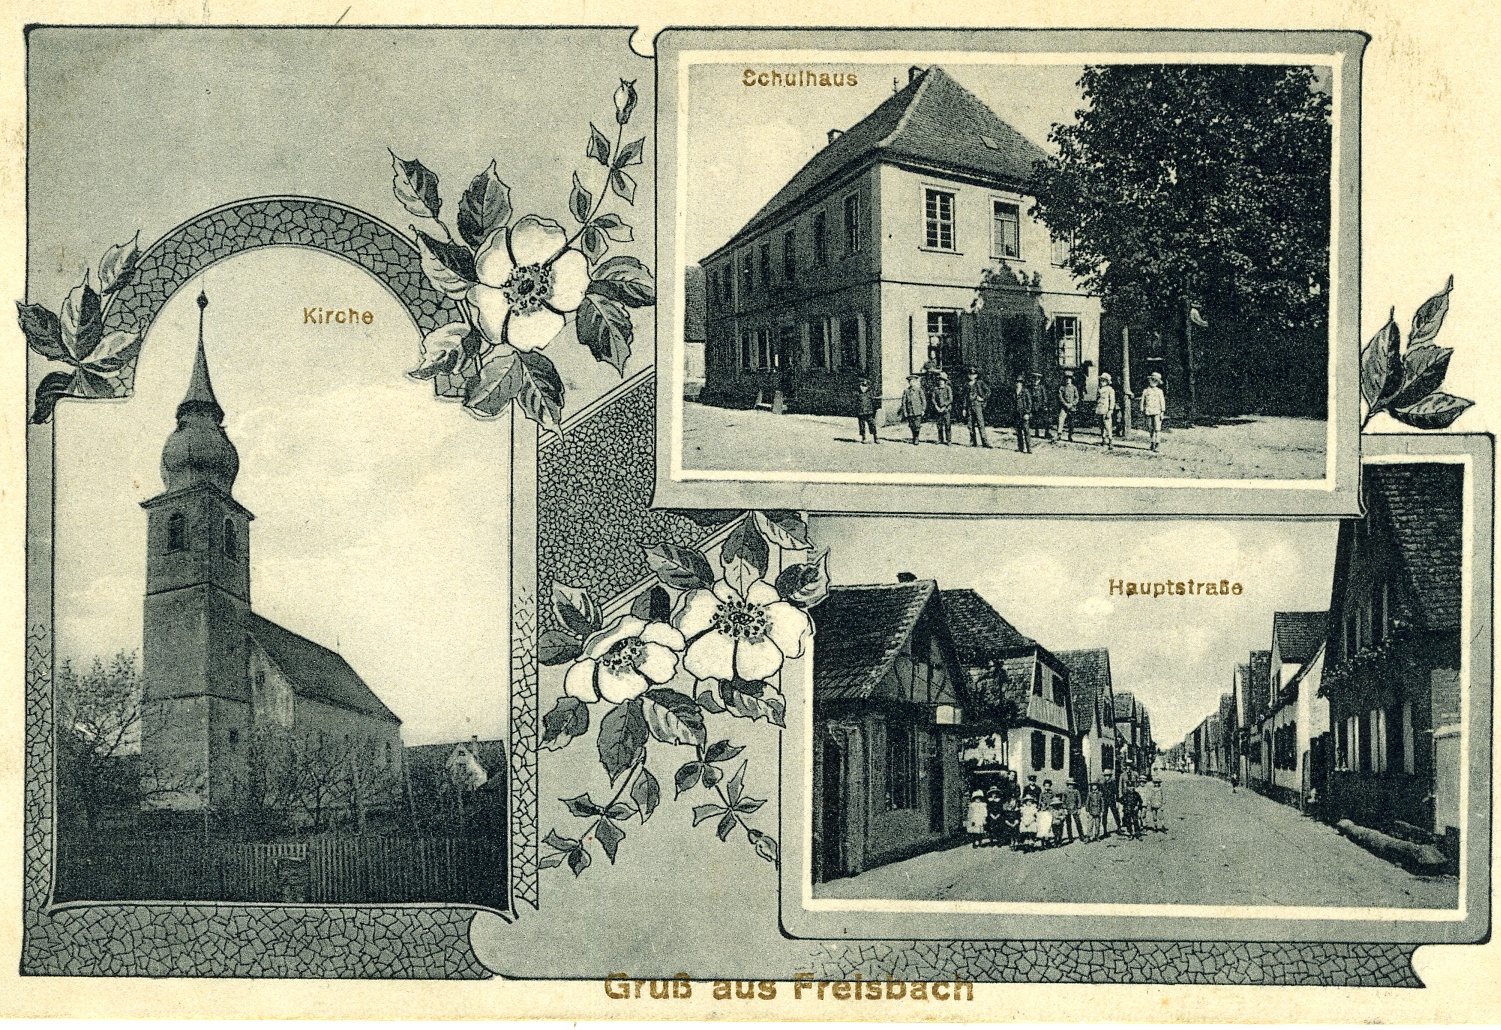 Postkarte aus Freisbach 1916 (Historisches Museum der Pfalz, Speyer CC BY)